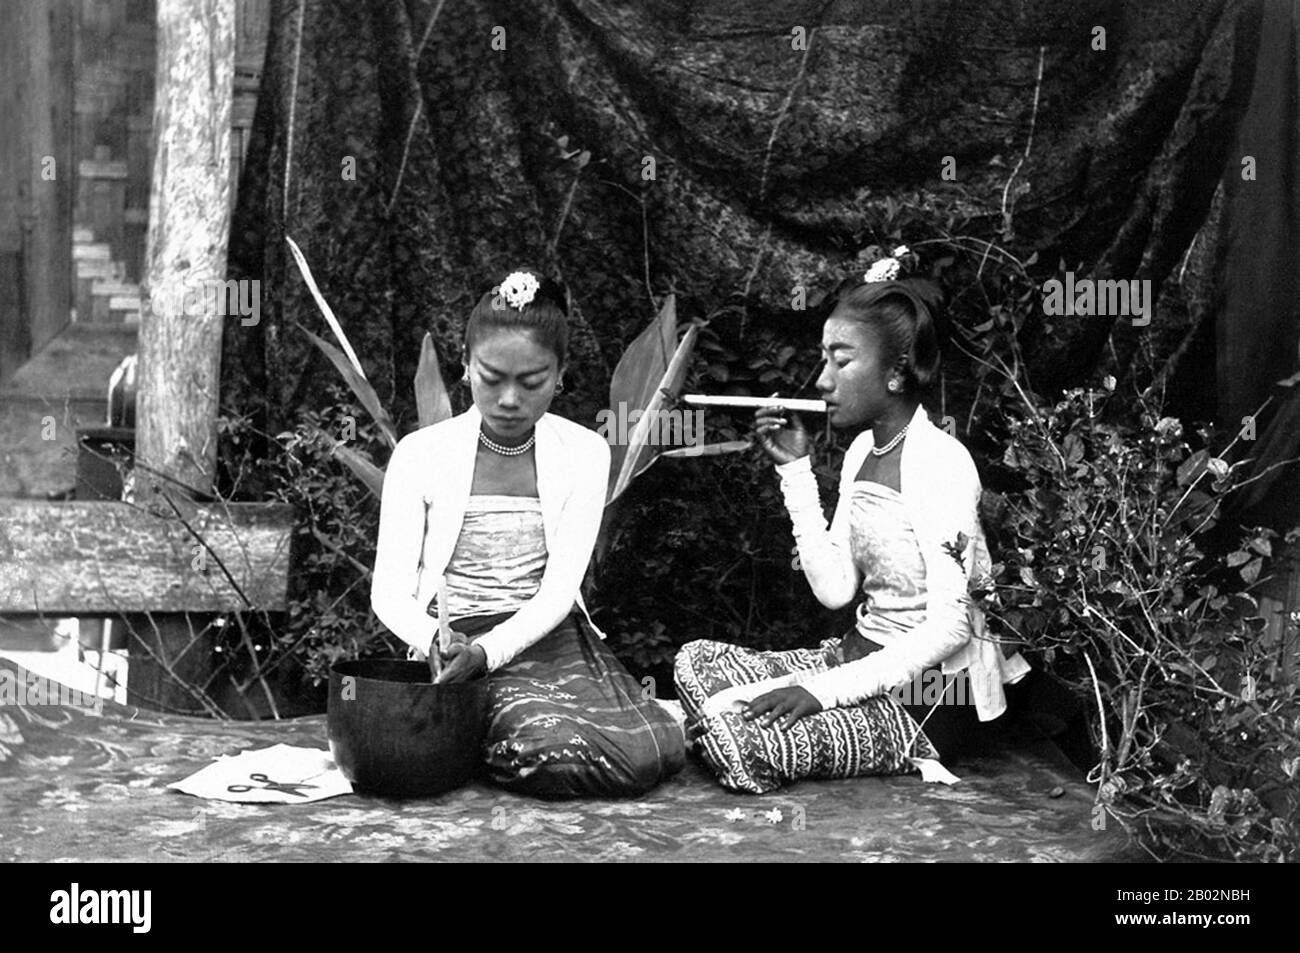 La conquista britannica della Birmania iniziò nel 1824 in risposta ad un tentativo birmano di invadere l'India. Nel 1886, e dopo due ulteriori guerre, la Gran Bretagna aveva incorporato l'intero paese nel Raj britannico. Per stimolare il commercio e facilitare i cambiamenti, gli inglesi portarono indiani e cinesi, che spostarono rapidamente i birmani nelle aree urbane. A questo giorno Rangoon e Mandalay hanno grandi popolazioni etniche indiane. Sono state costruite ferrovie e scuole, oltre a un gran numero di prigioni, tra cui la famigerata prigione di Inossein, allora come oggi utilizzata per i prigionieri politici. Il risentimento birmano era forte ed era vente Foto Stock